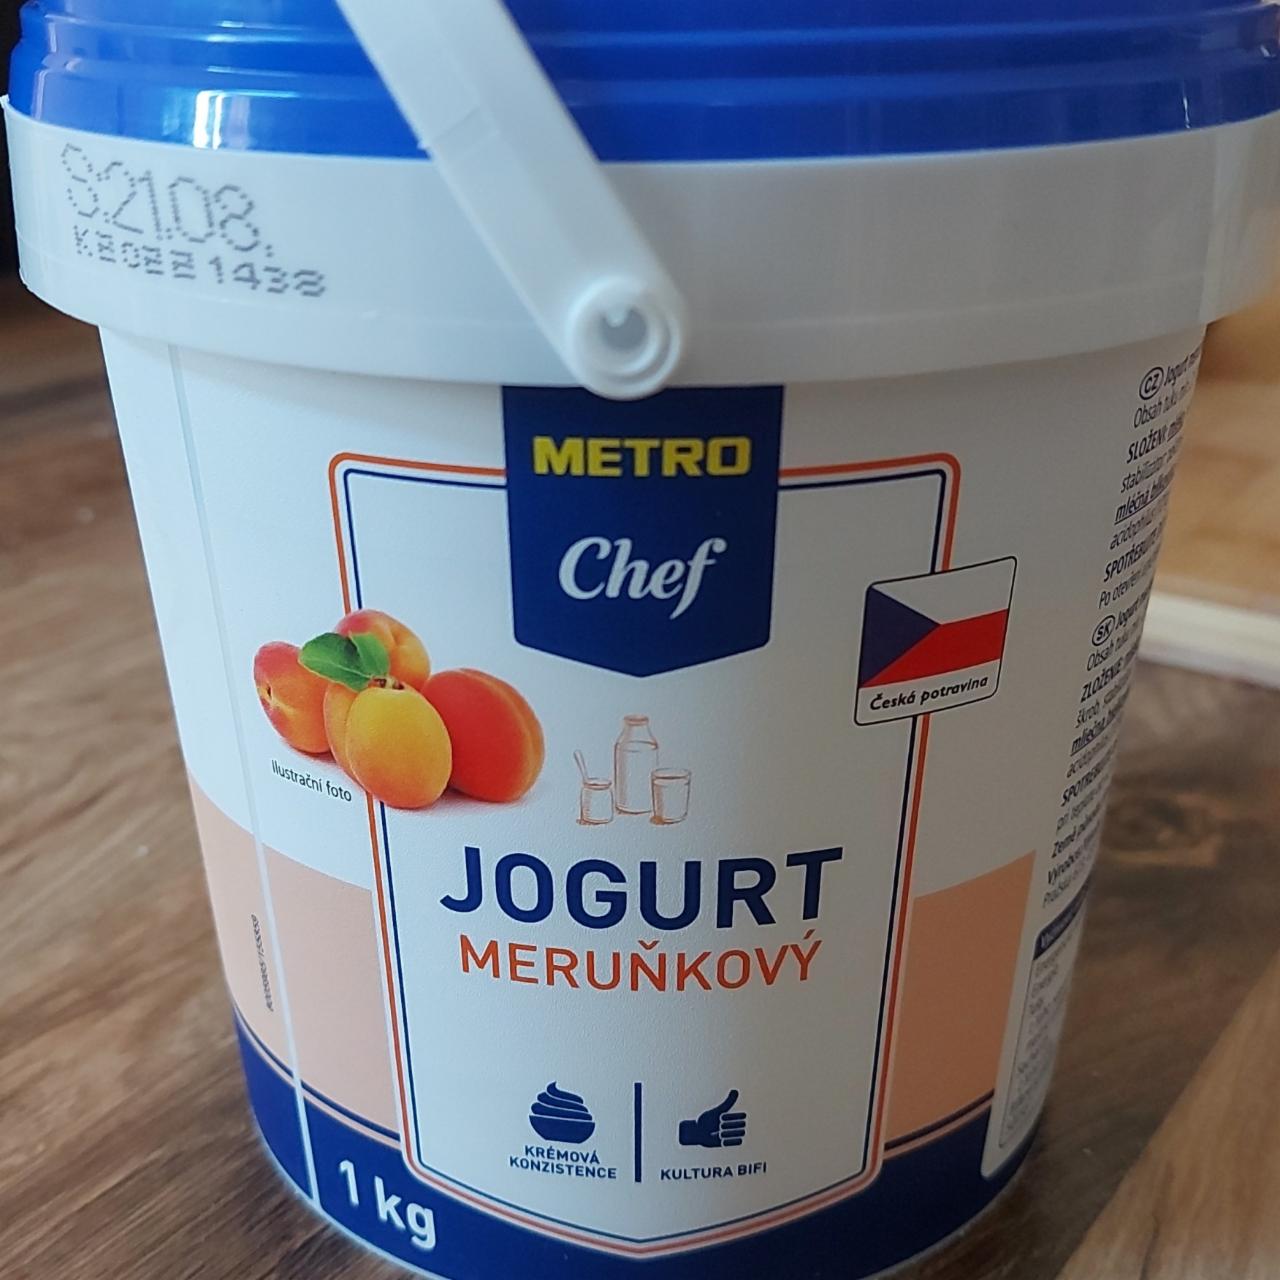 Fotografie - Jogurt meruňkový Metro Chef